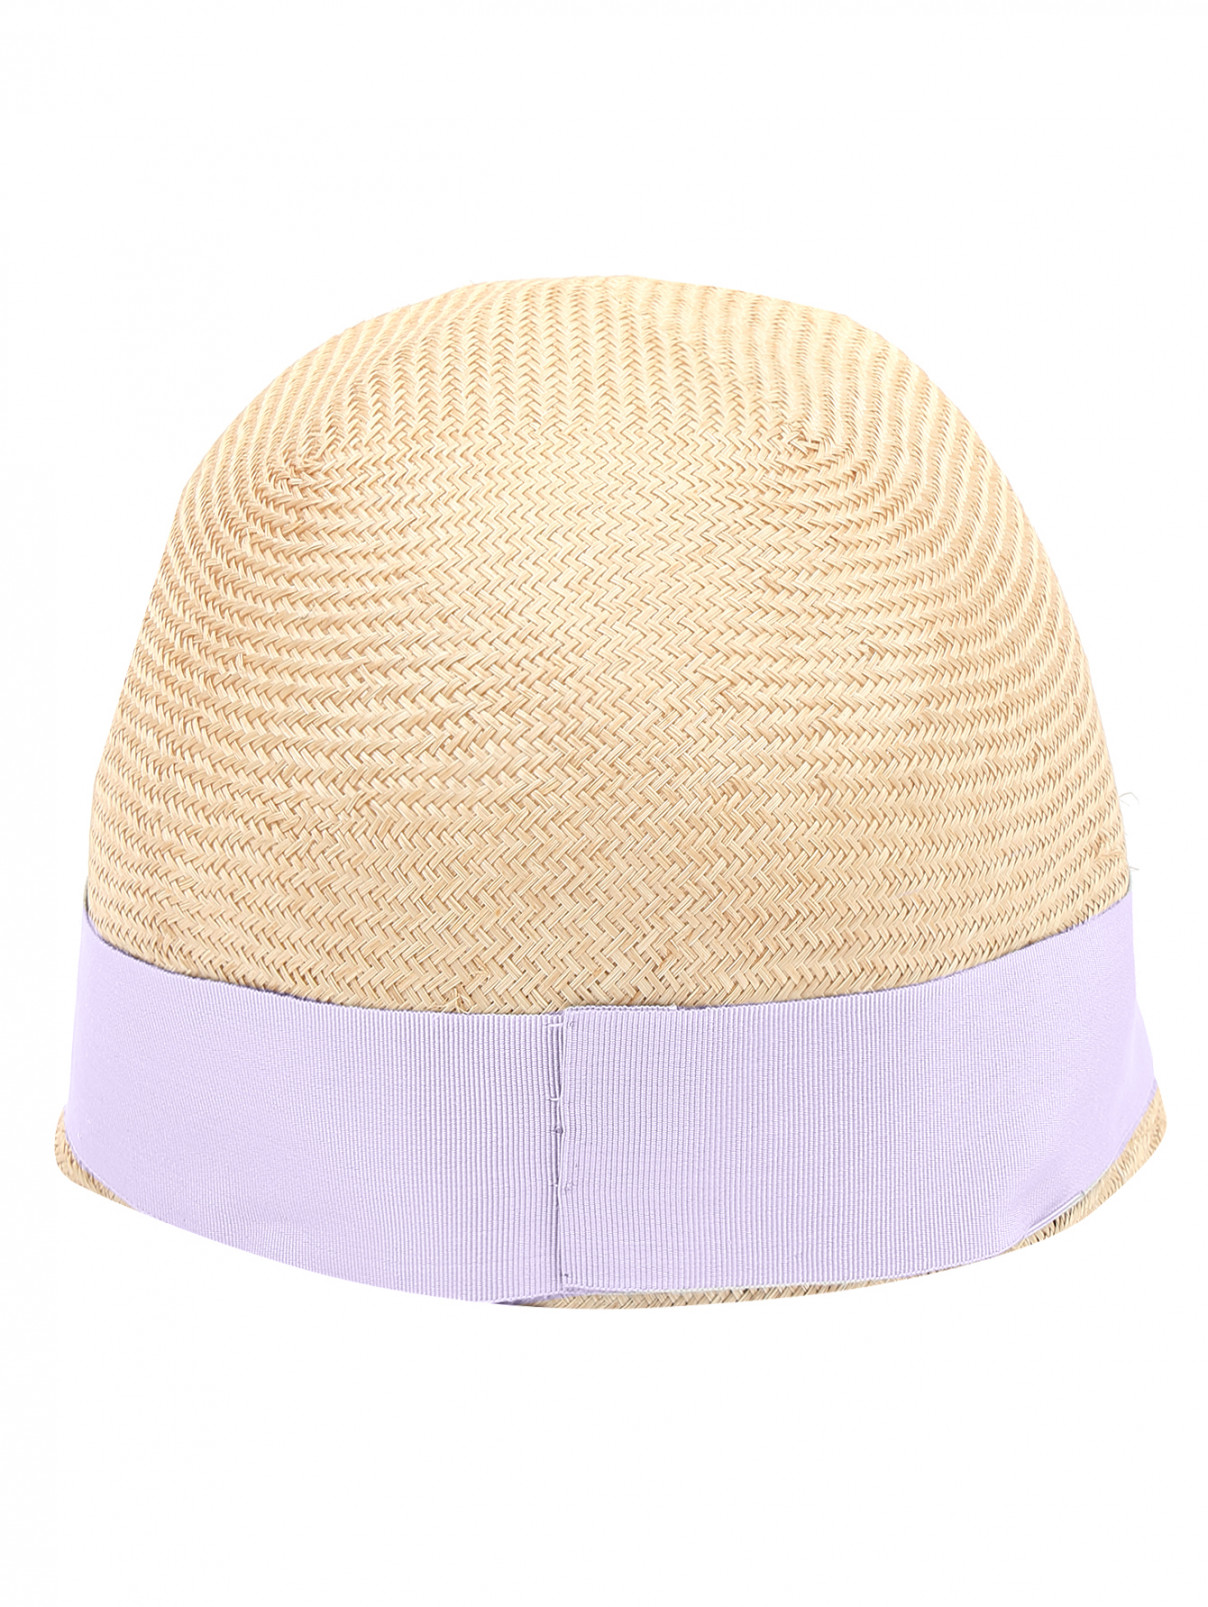 Шляпа из соломы с контрастной отделкой Federica Moretti  –  Обтравка2  – Цвет:  Бежевый